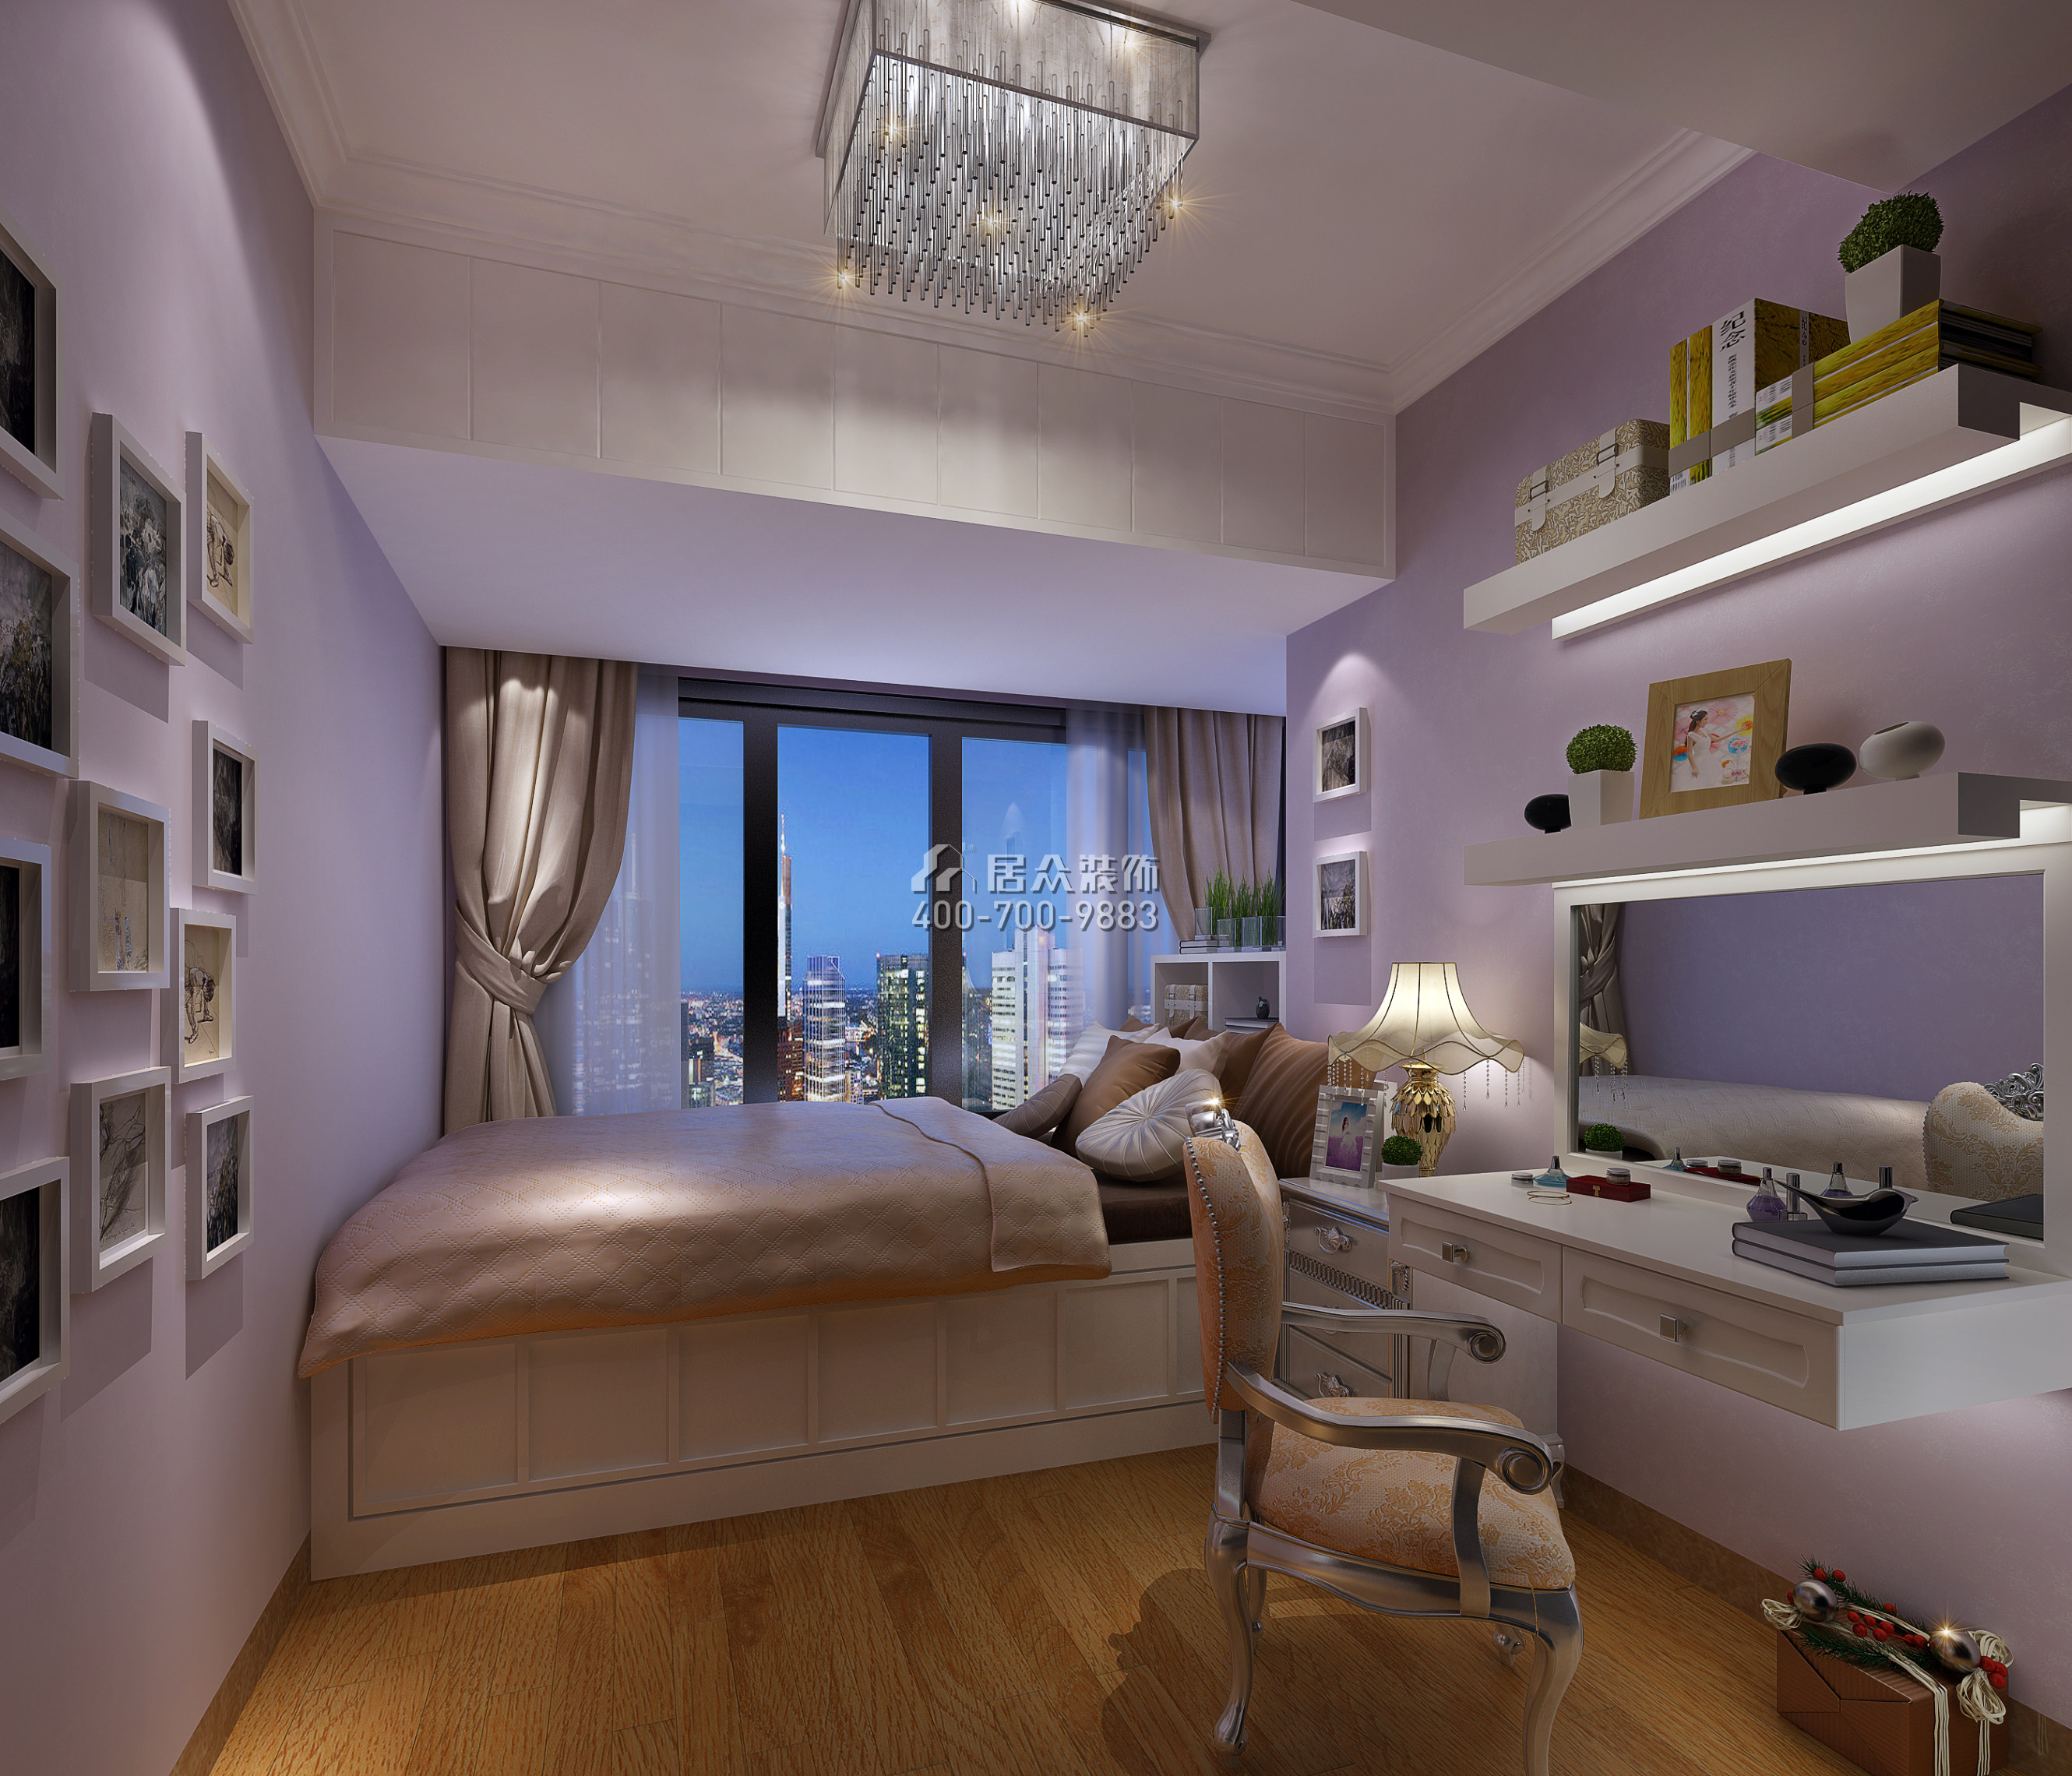 大运城邦一期176平方米现代简约风格平层户型卧室书房一体kok电竞平台效果图